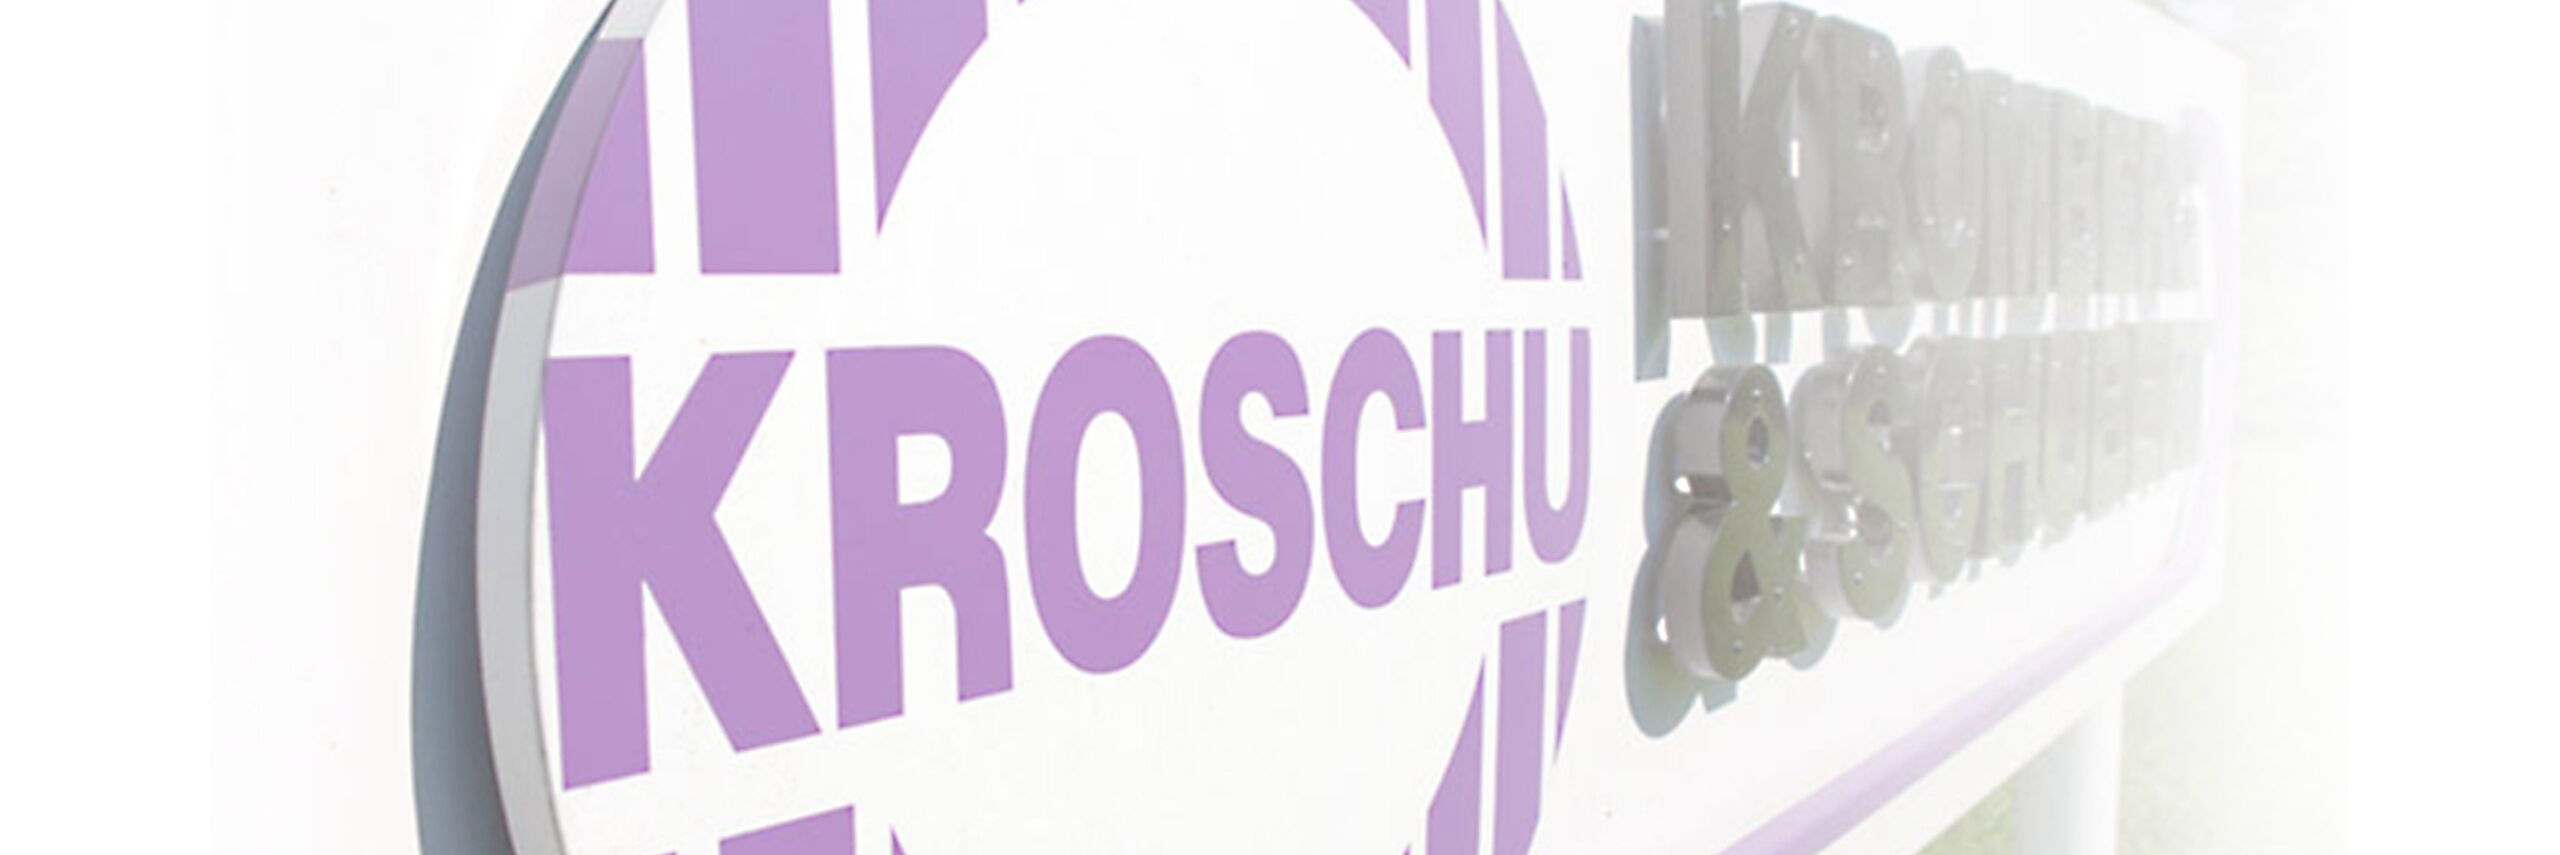 Schild mit dem Kromberg & Schubert Logo.